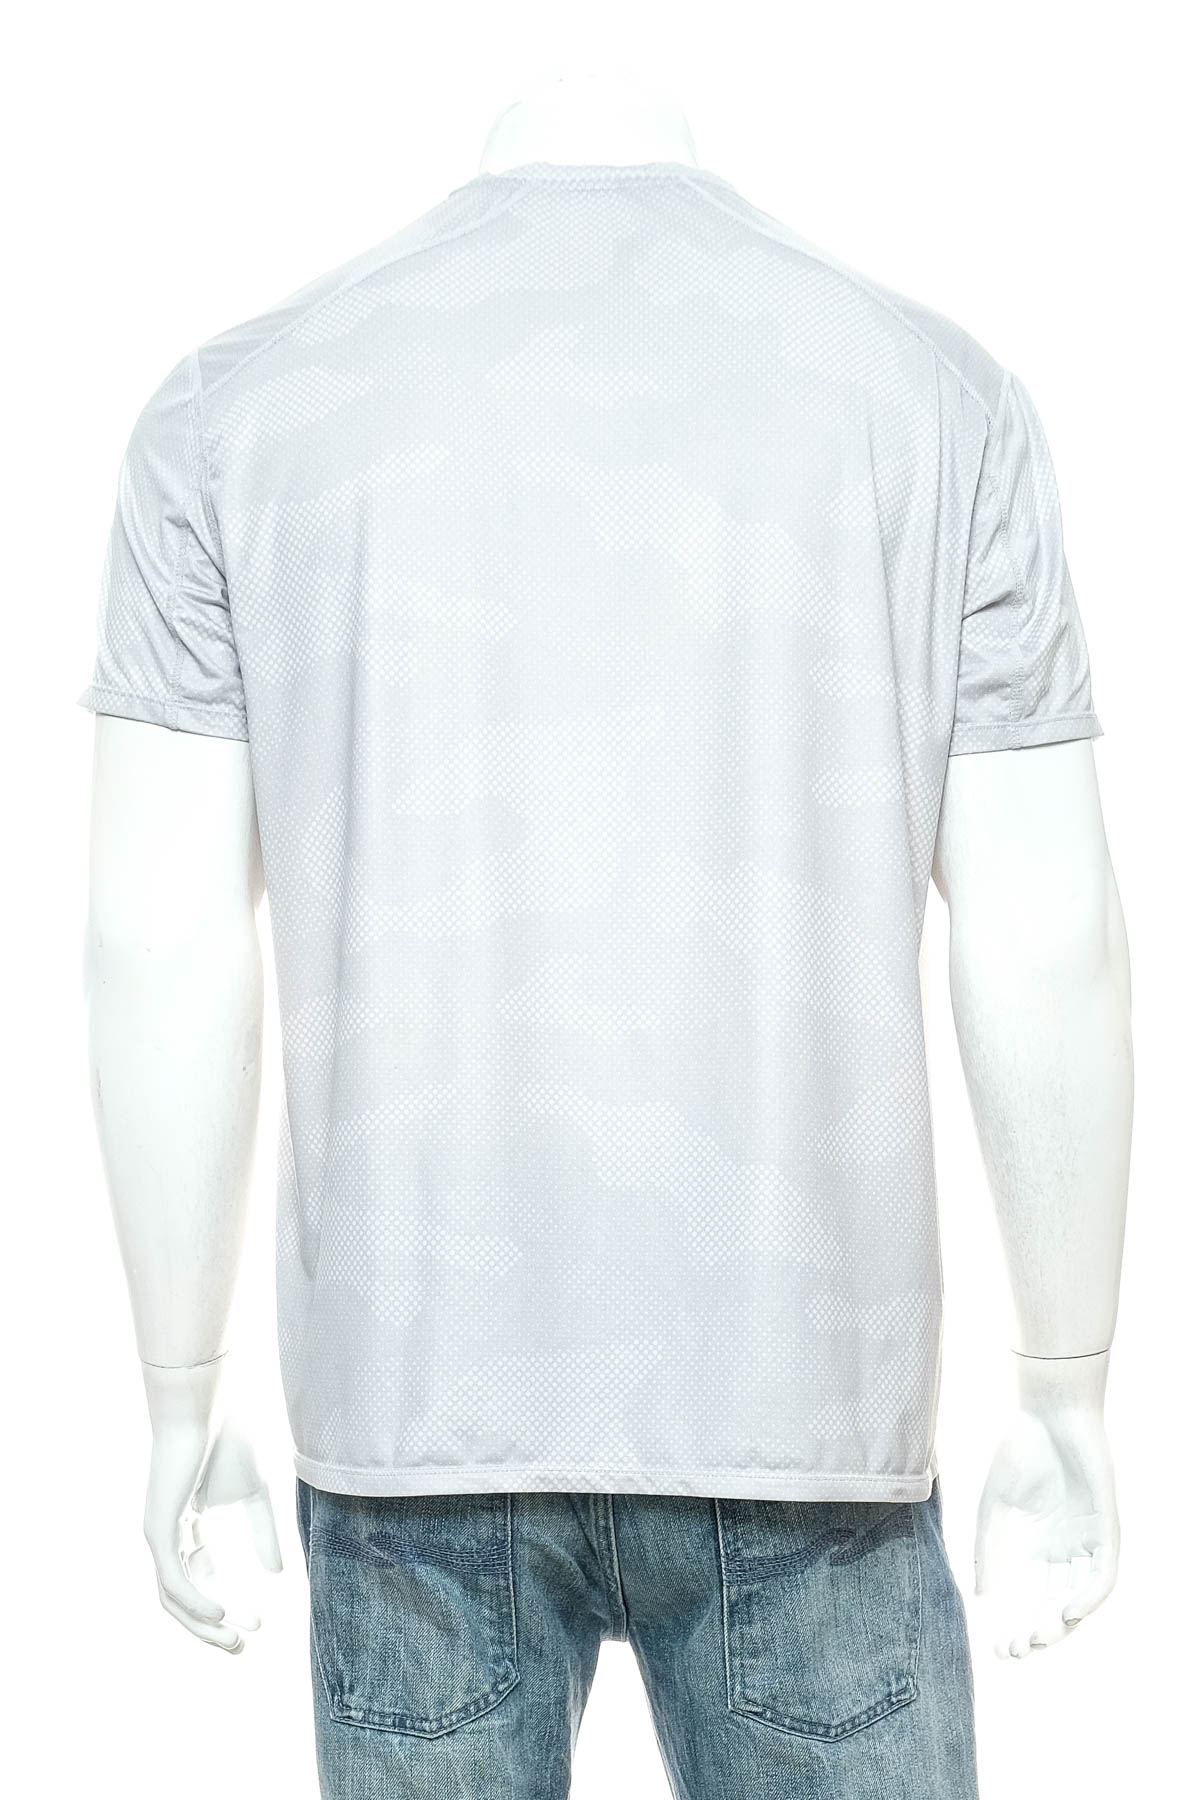 Αντρική μπλούζα - H&M - 1